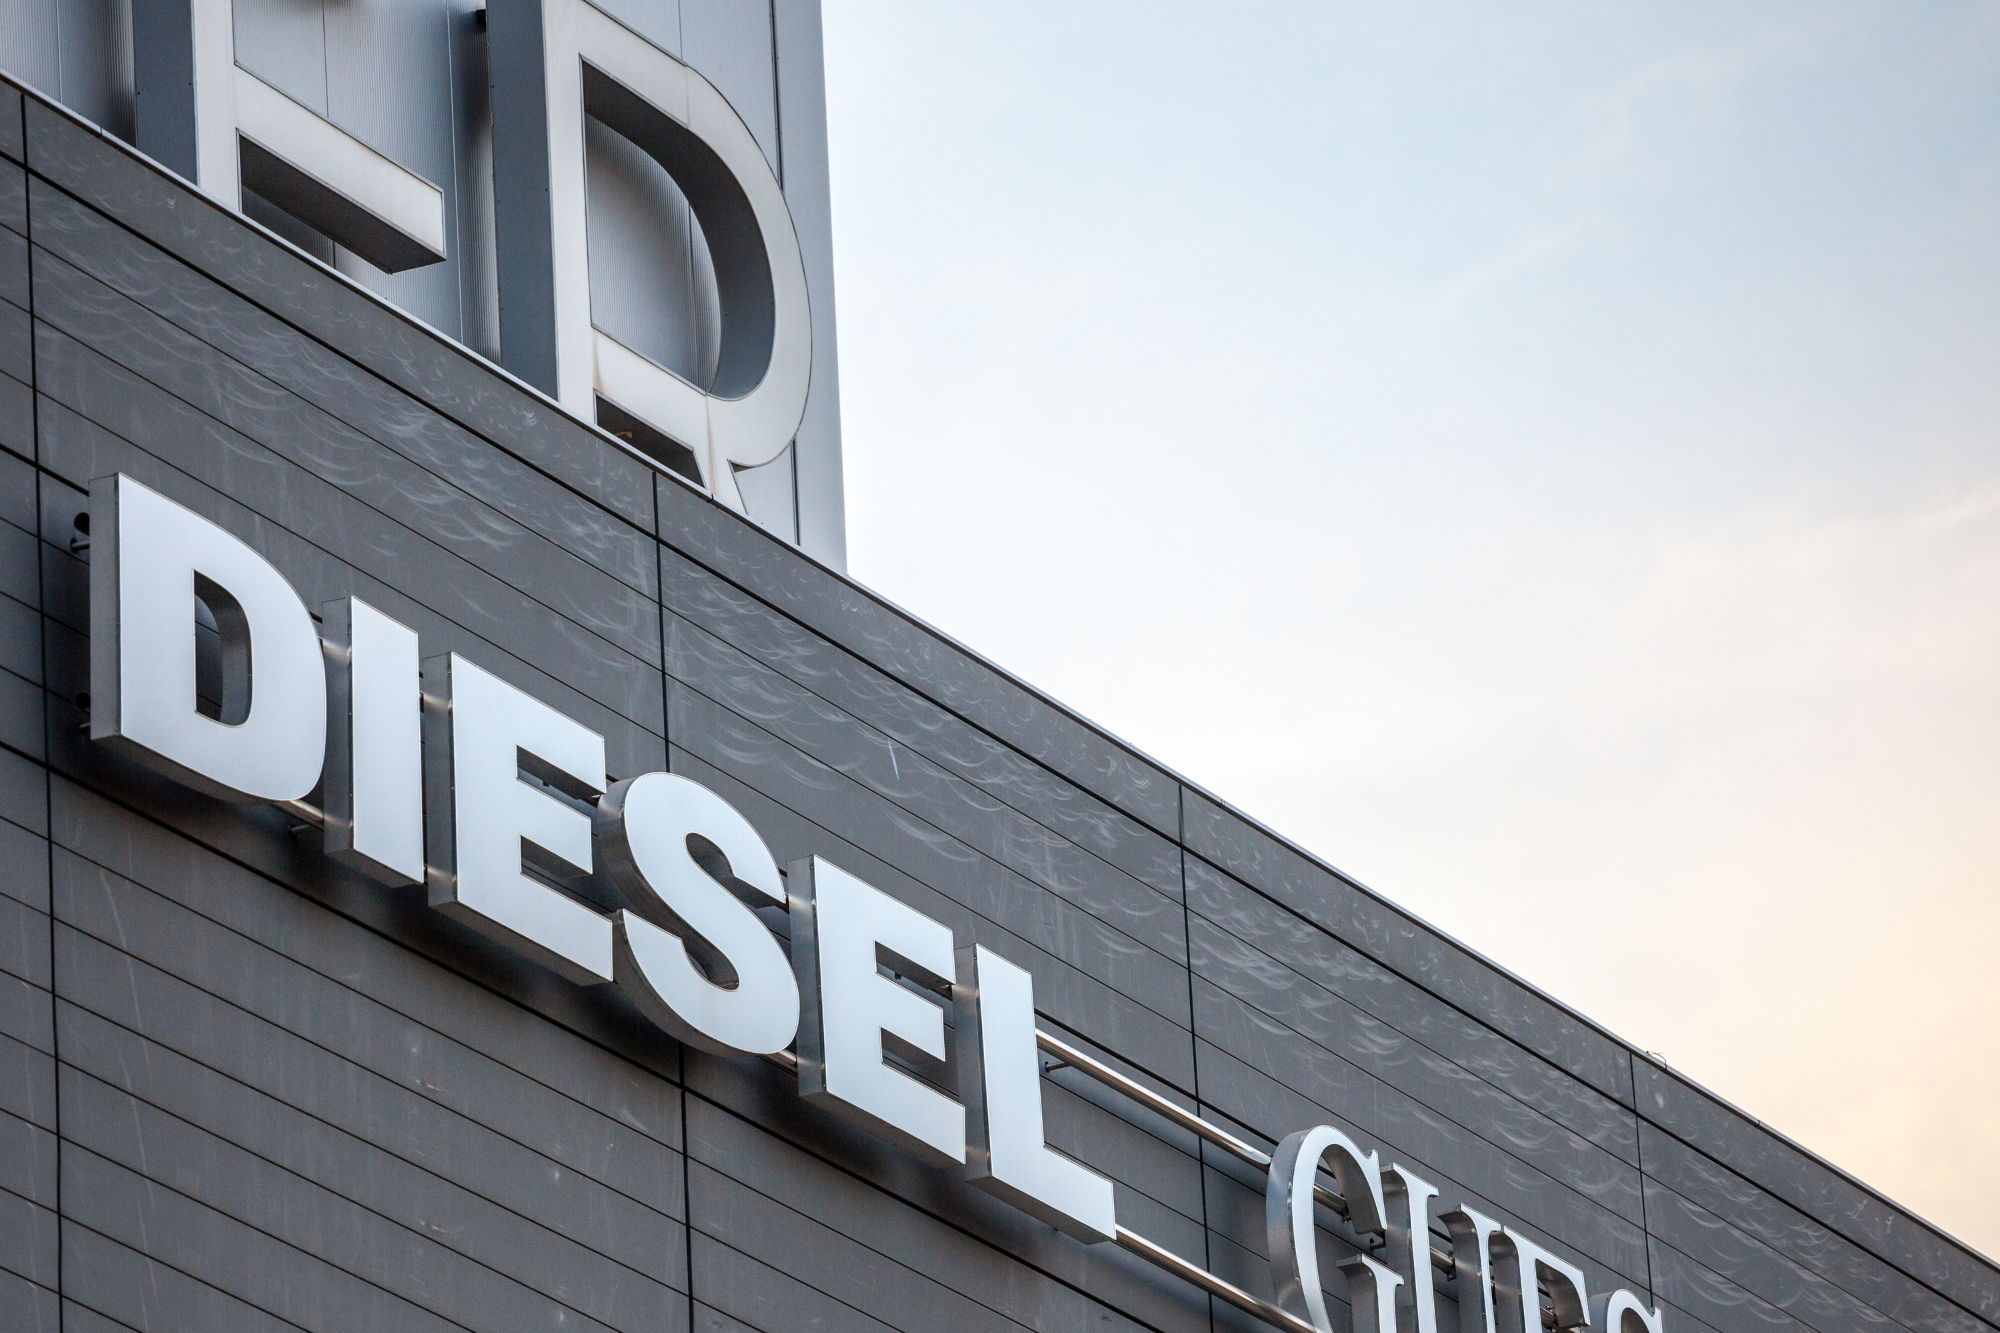 Blagovna znamka Diesel je znana po celem svetu